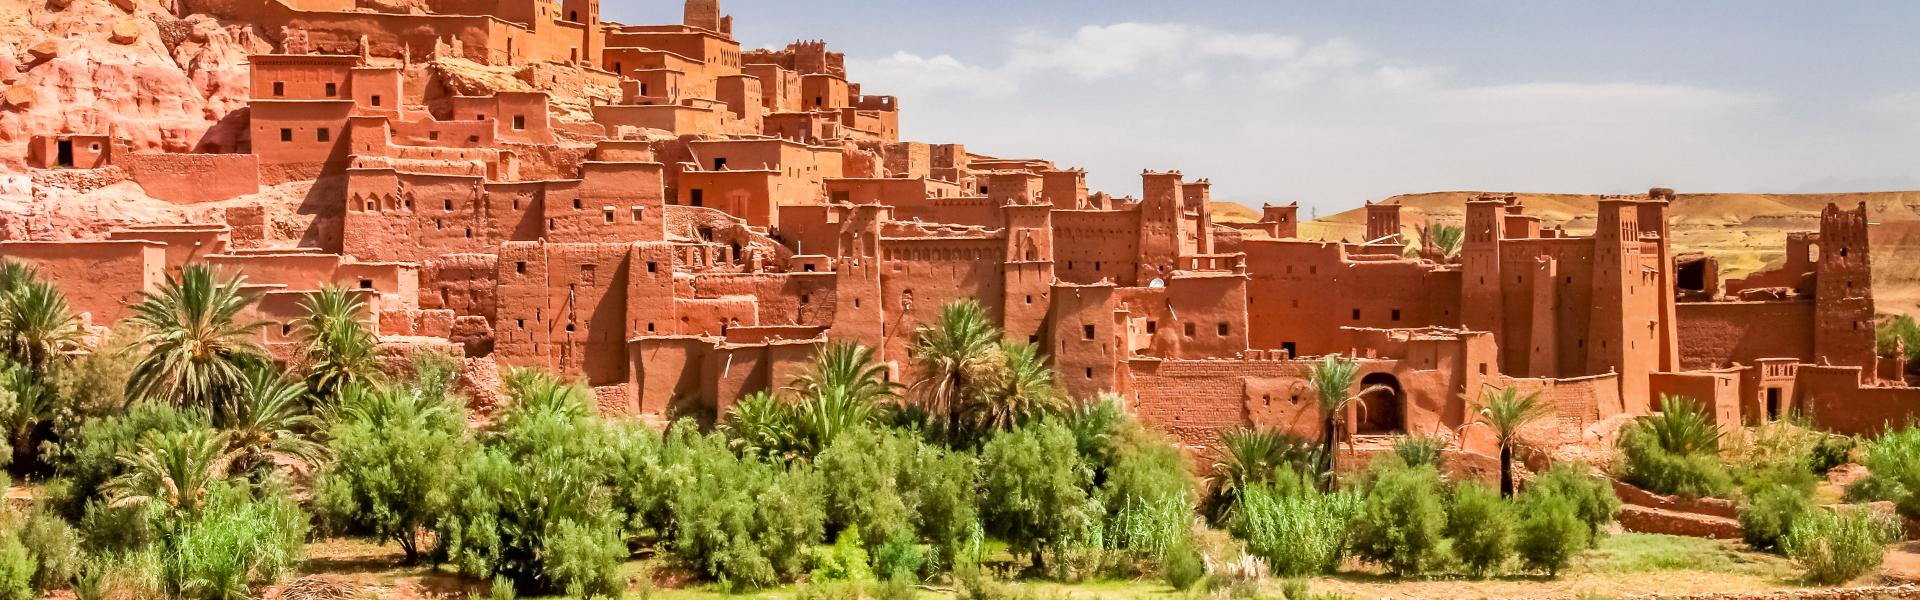 Ferienwohnungen und Ferienhäuser in Marokko - HomeToGo